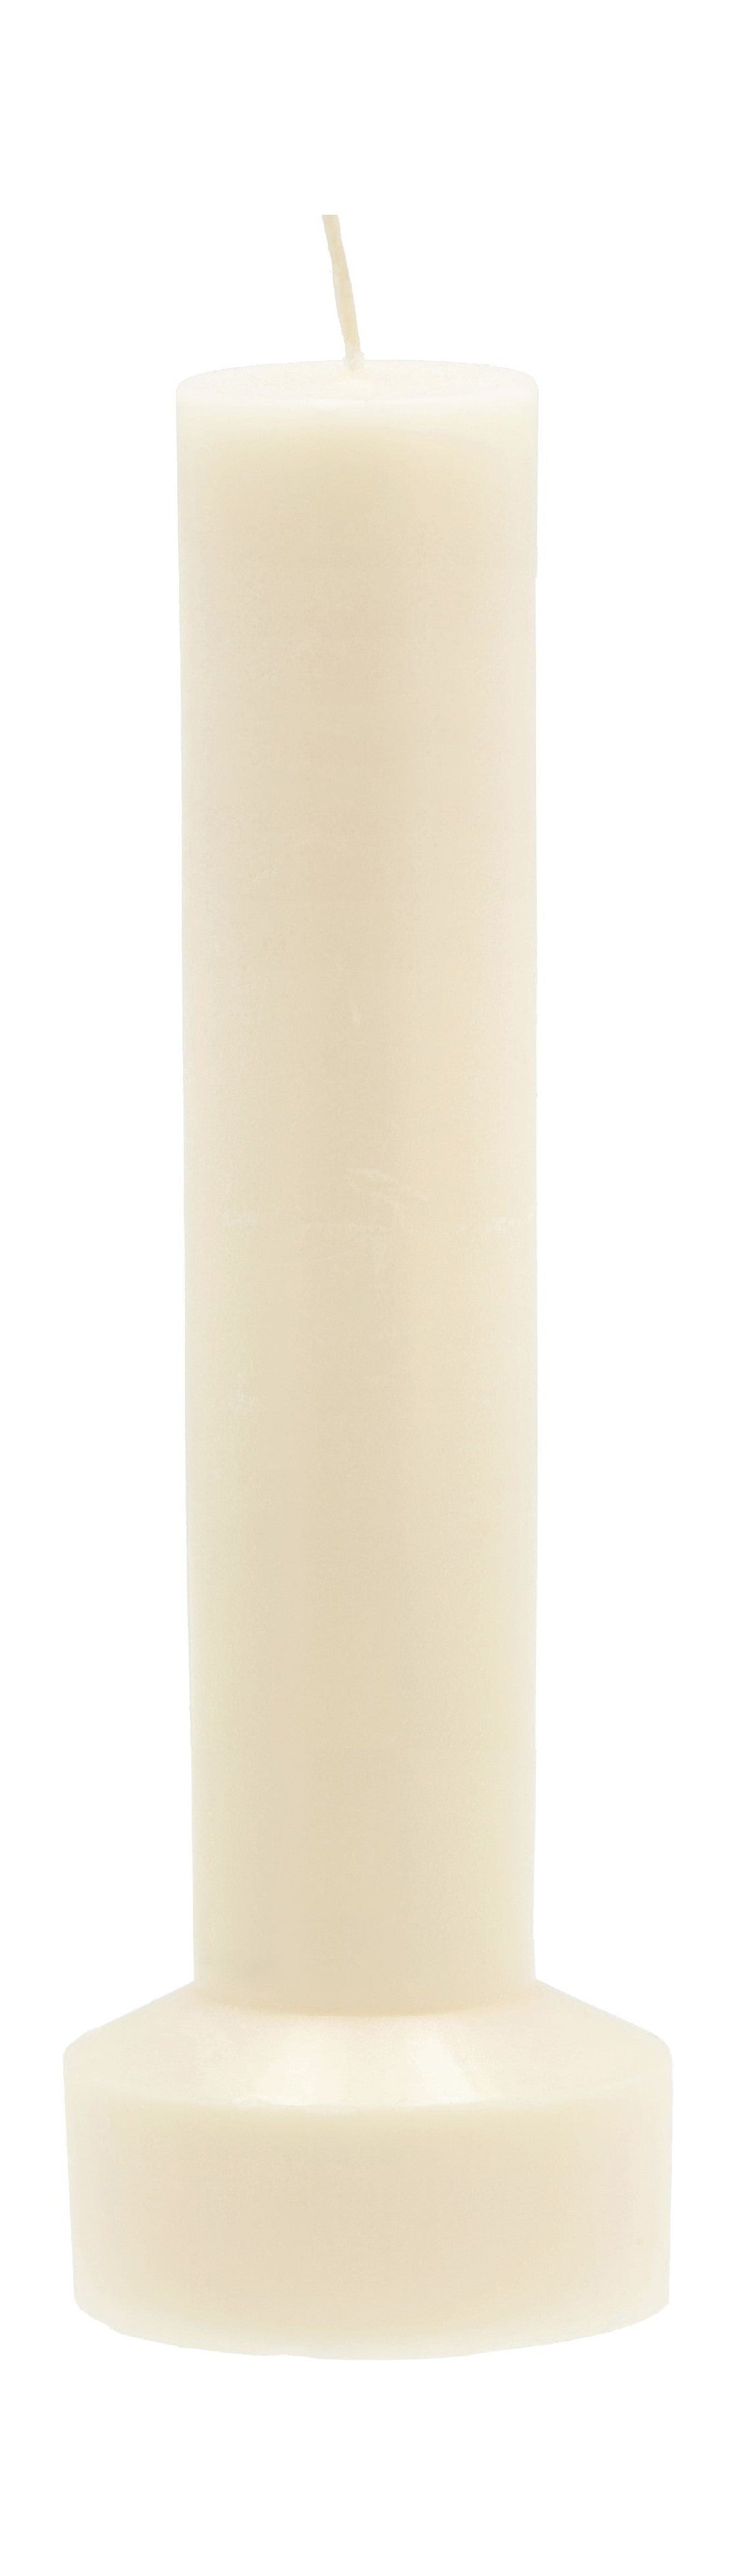 Collezione Villa Hvils Candela del pilastro Ø 8 x 23 cm, crema